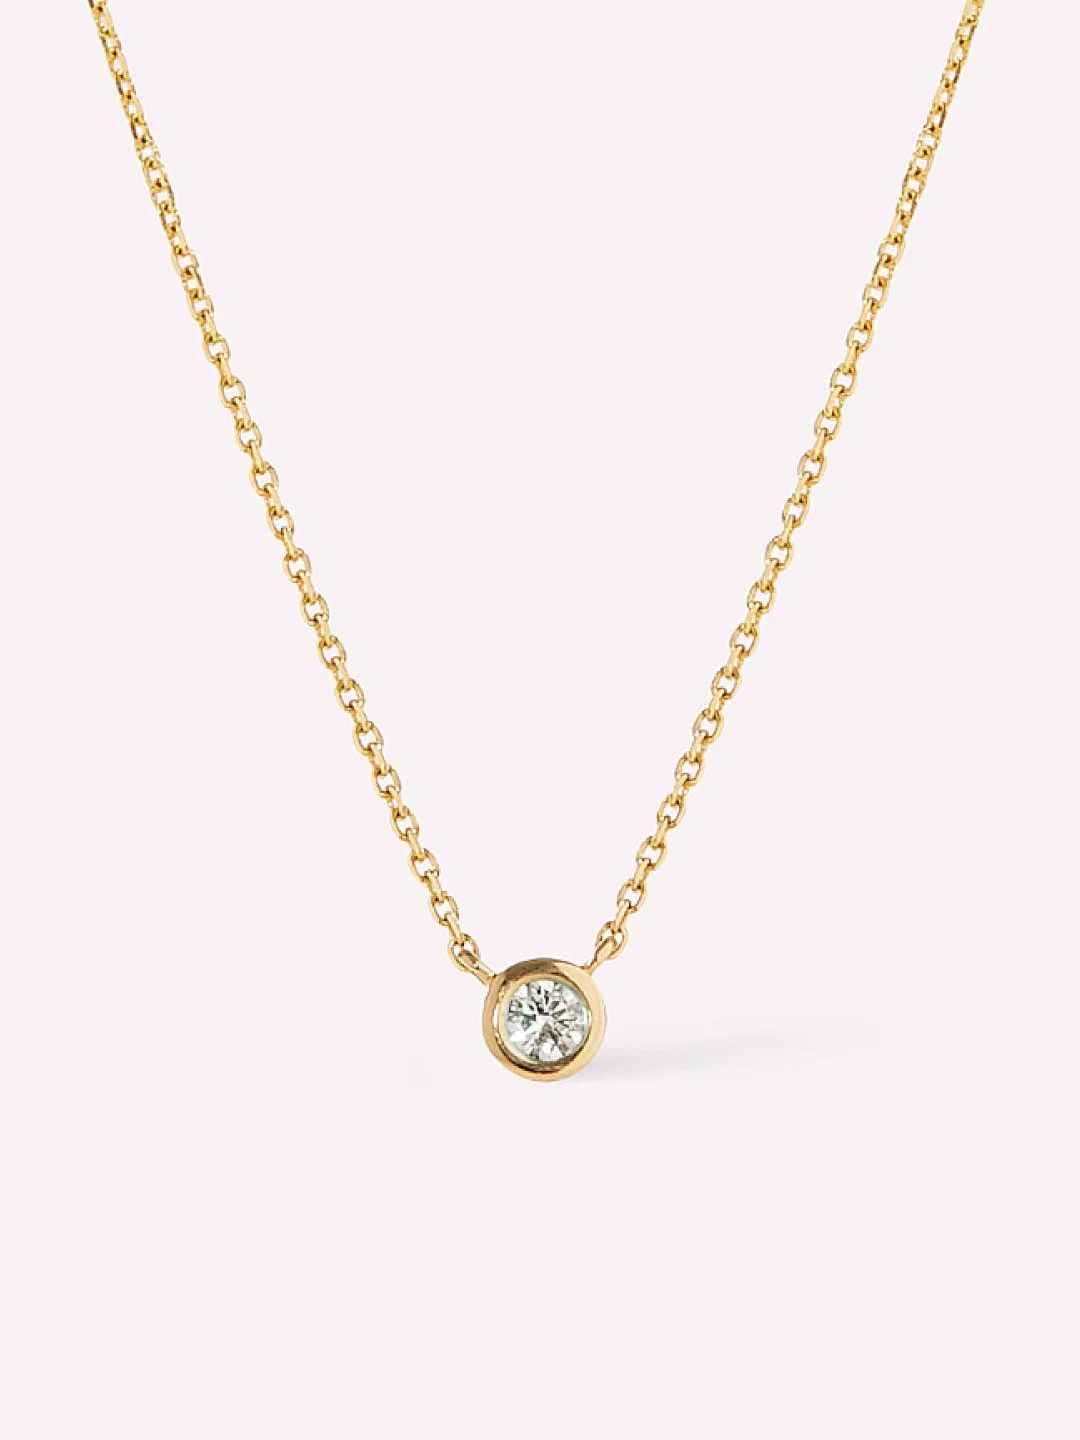 Diamond Necklace | Ana Luisa